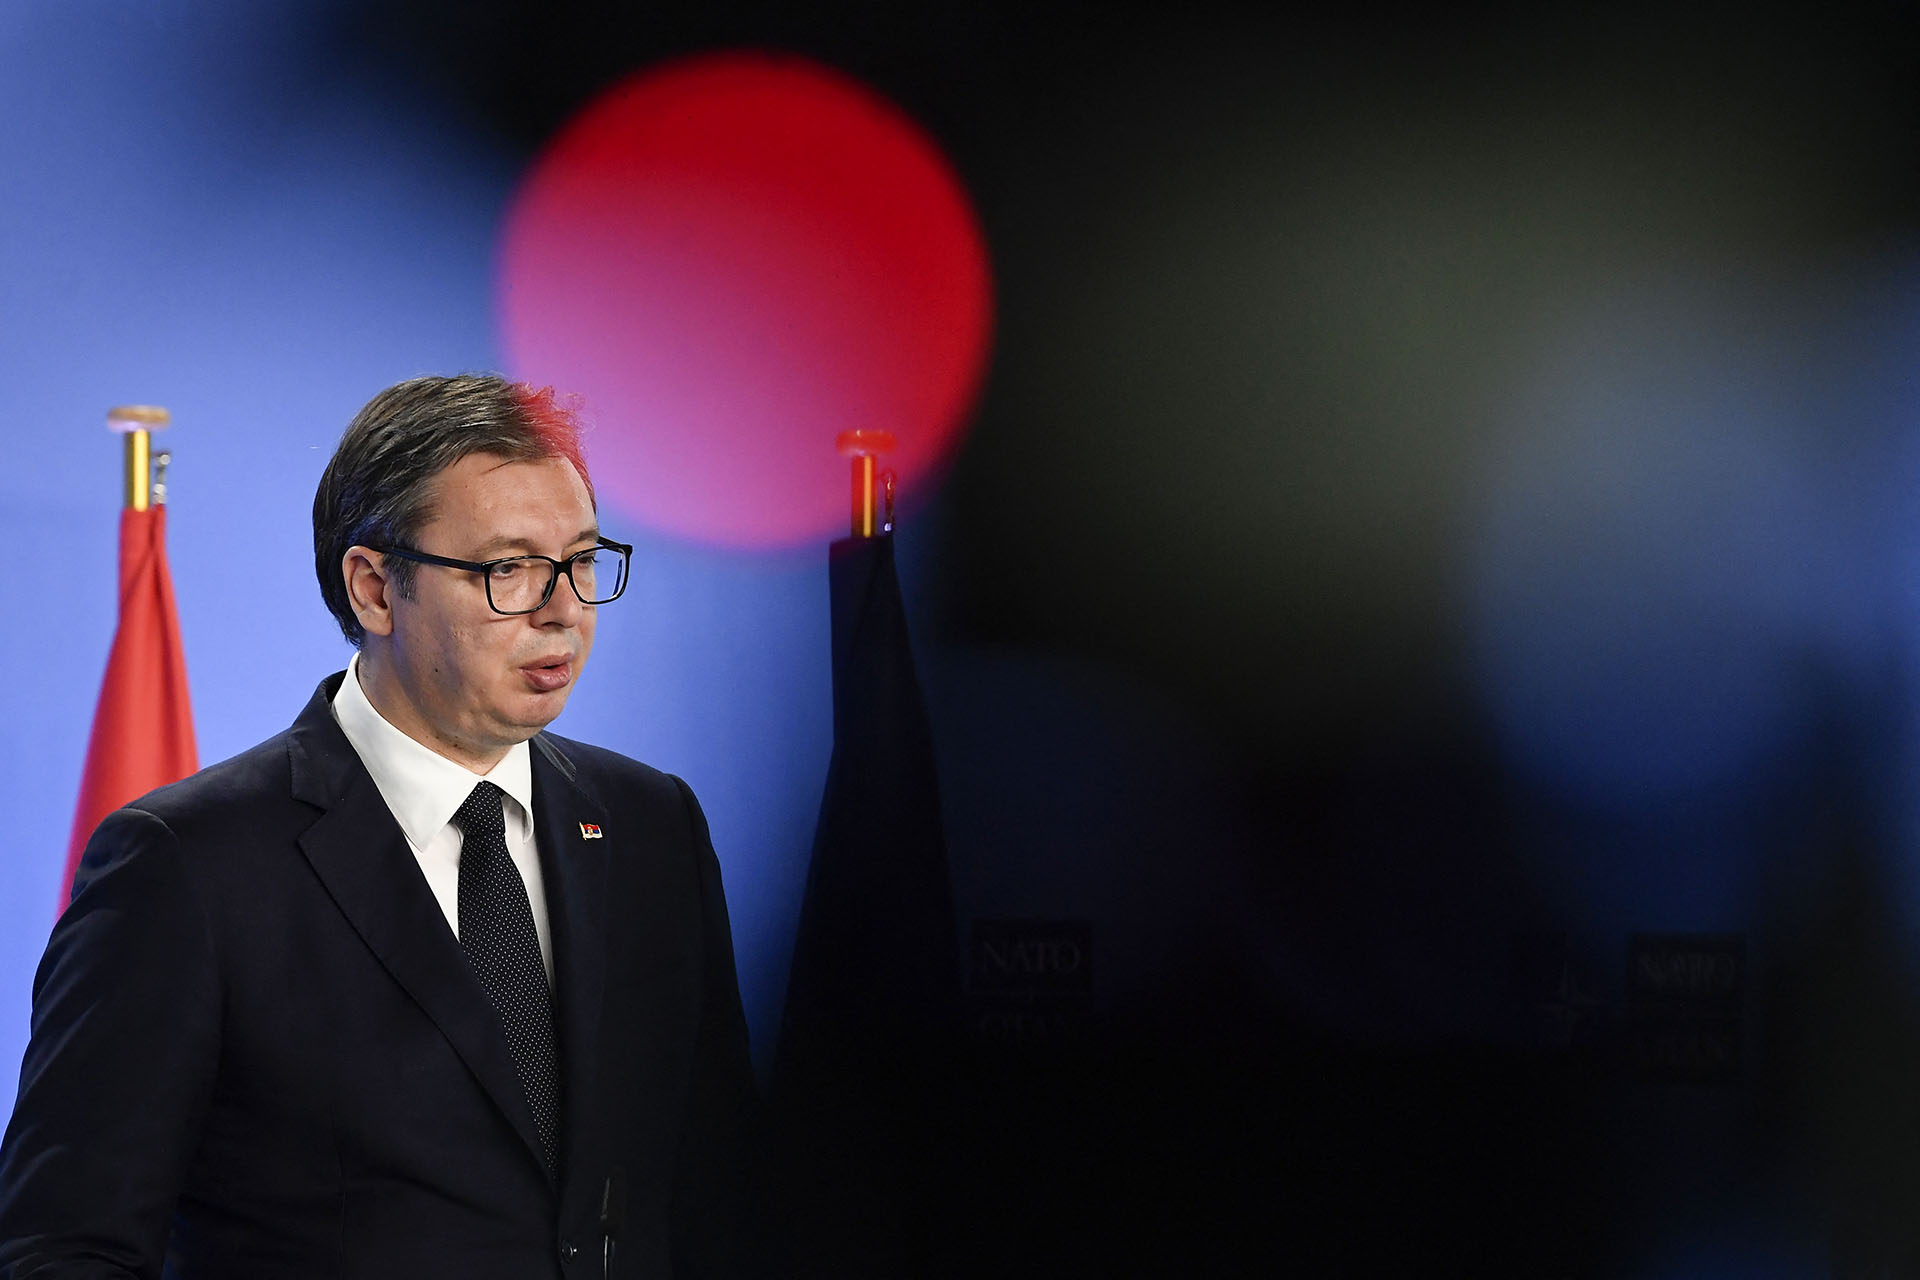 Hazugságvizsgálat alá vetné magát a szerb elnök